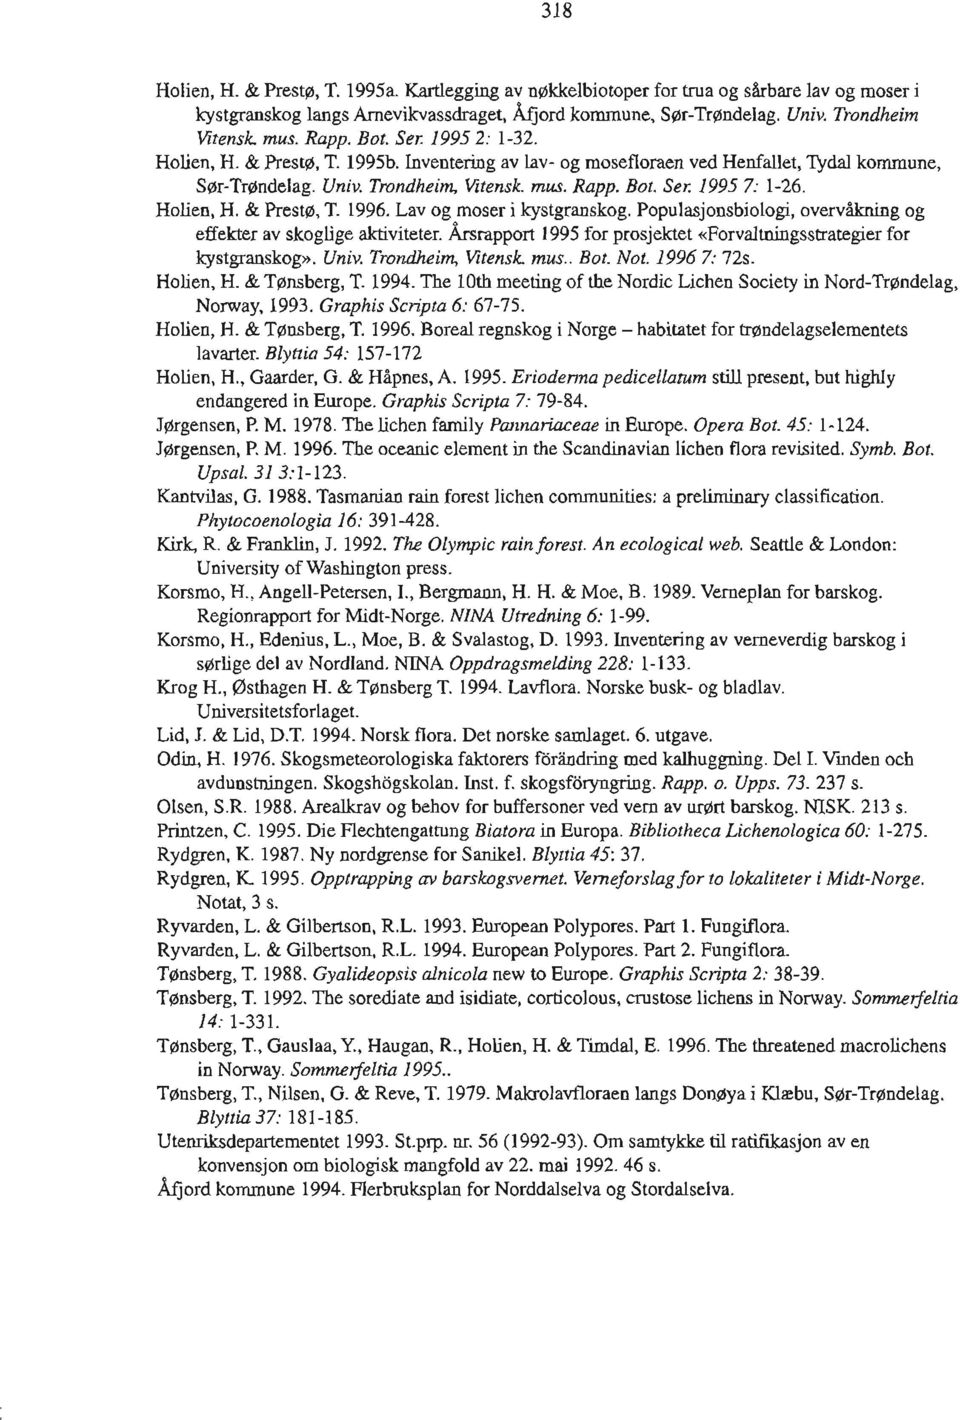 Holien, H. & Presto, T. 1996. Lav og moser i kystgranskog. Populasjonsbiologi, overvåkning og effekter av skoglige aktiviteter.